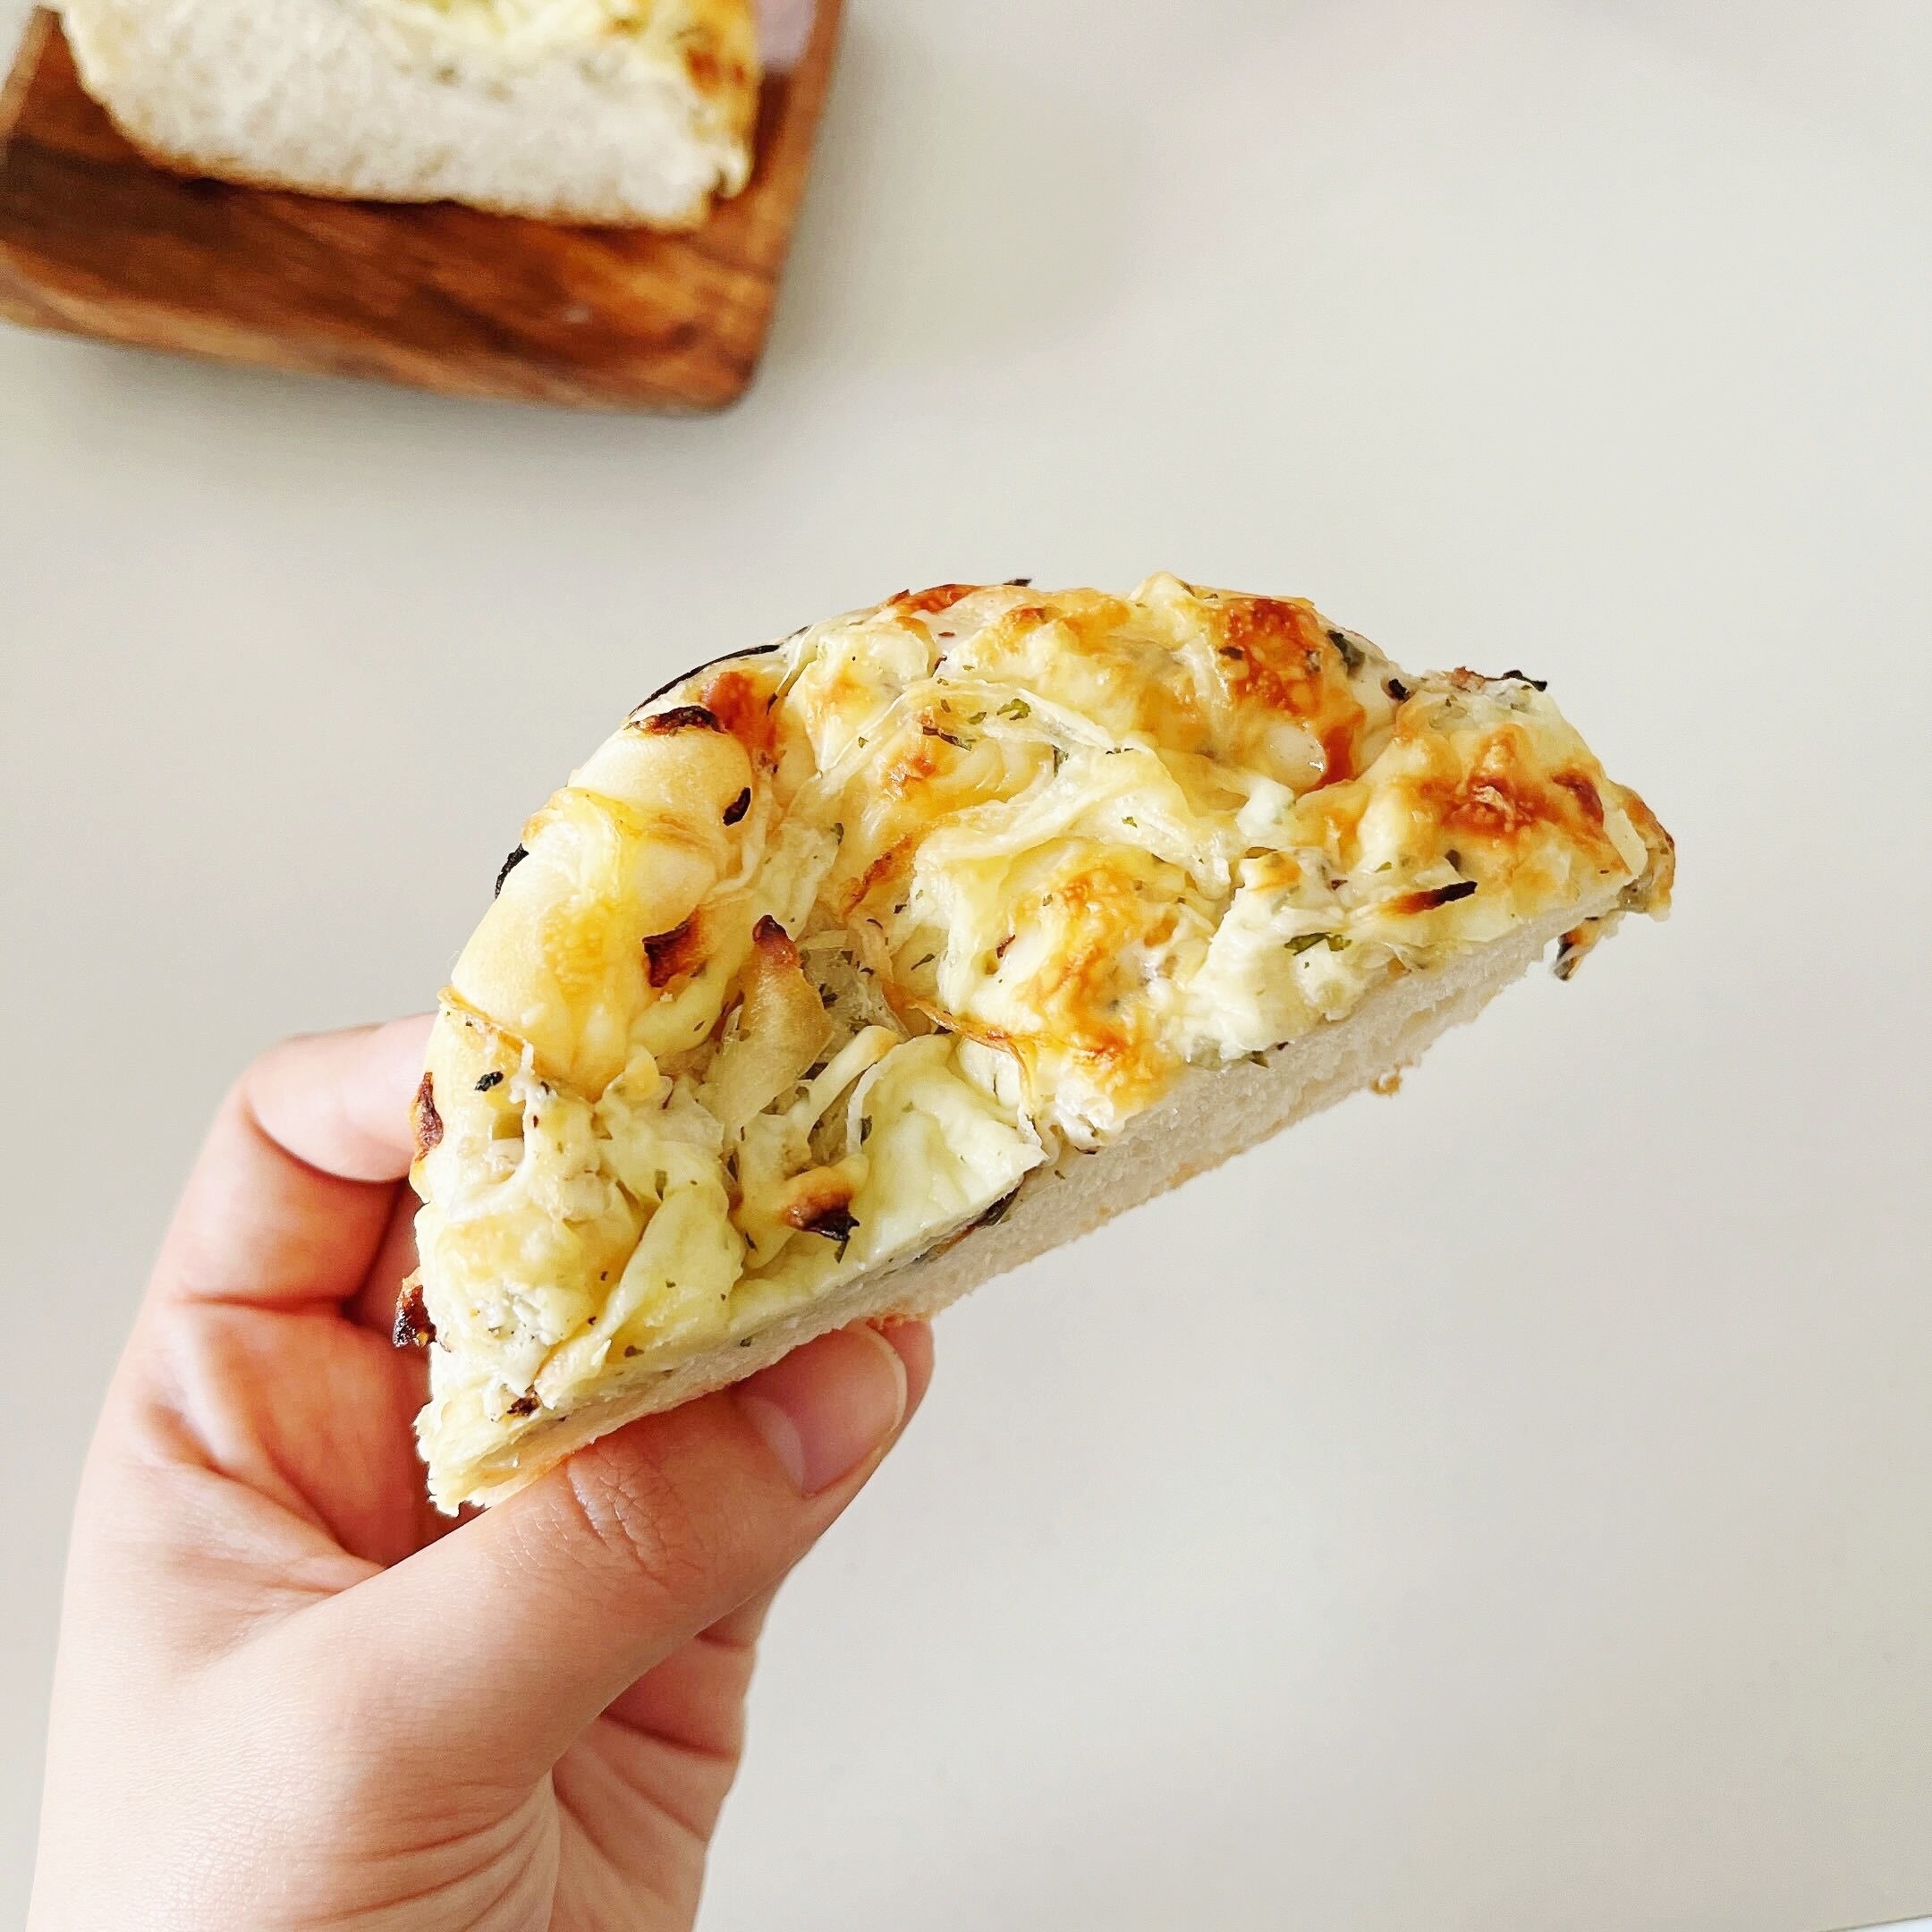 FamilyMart（ファミリーマート）のオススメのパン「タルタルソースがおいしいチーズ&amp;amp;オニオン」